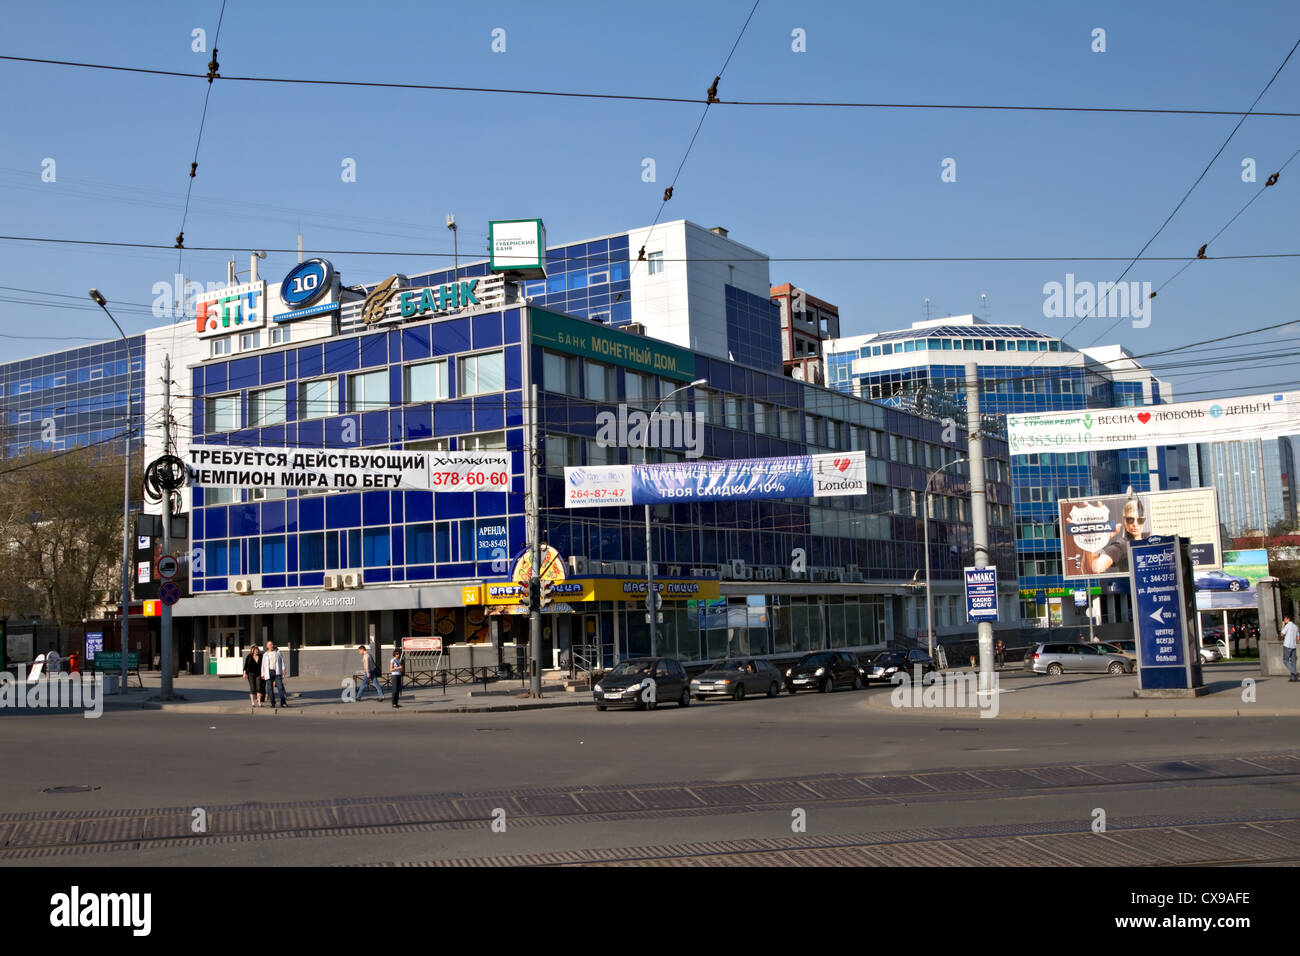 Yekaterinburg. Ekaterinburg. City Sights. Russia. Stock Photo